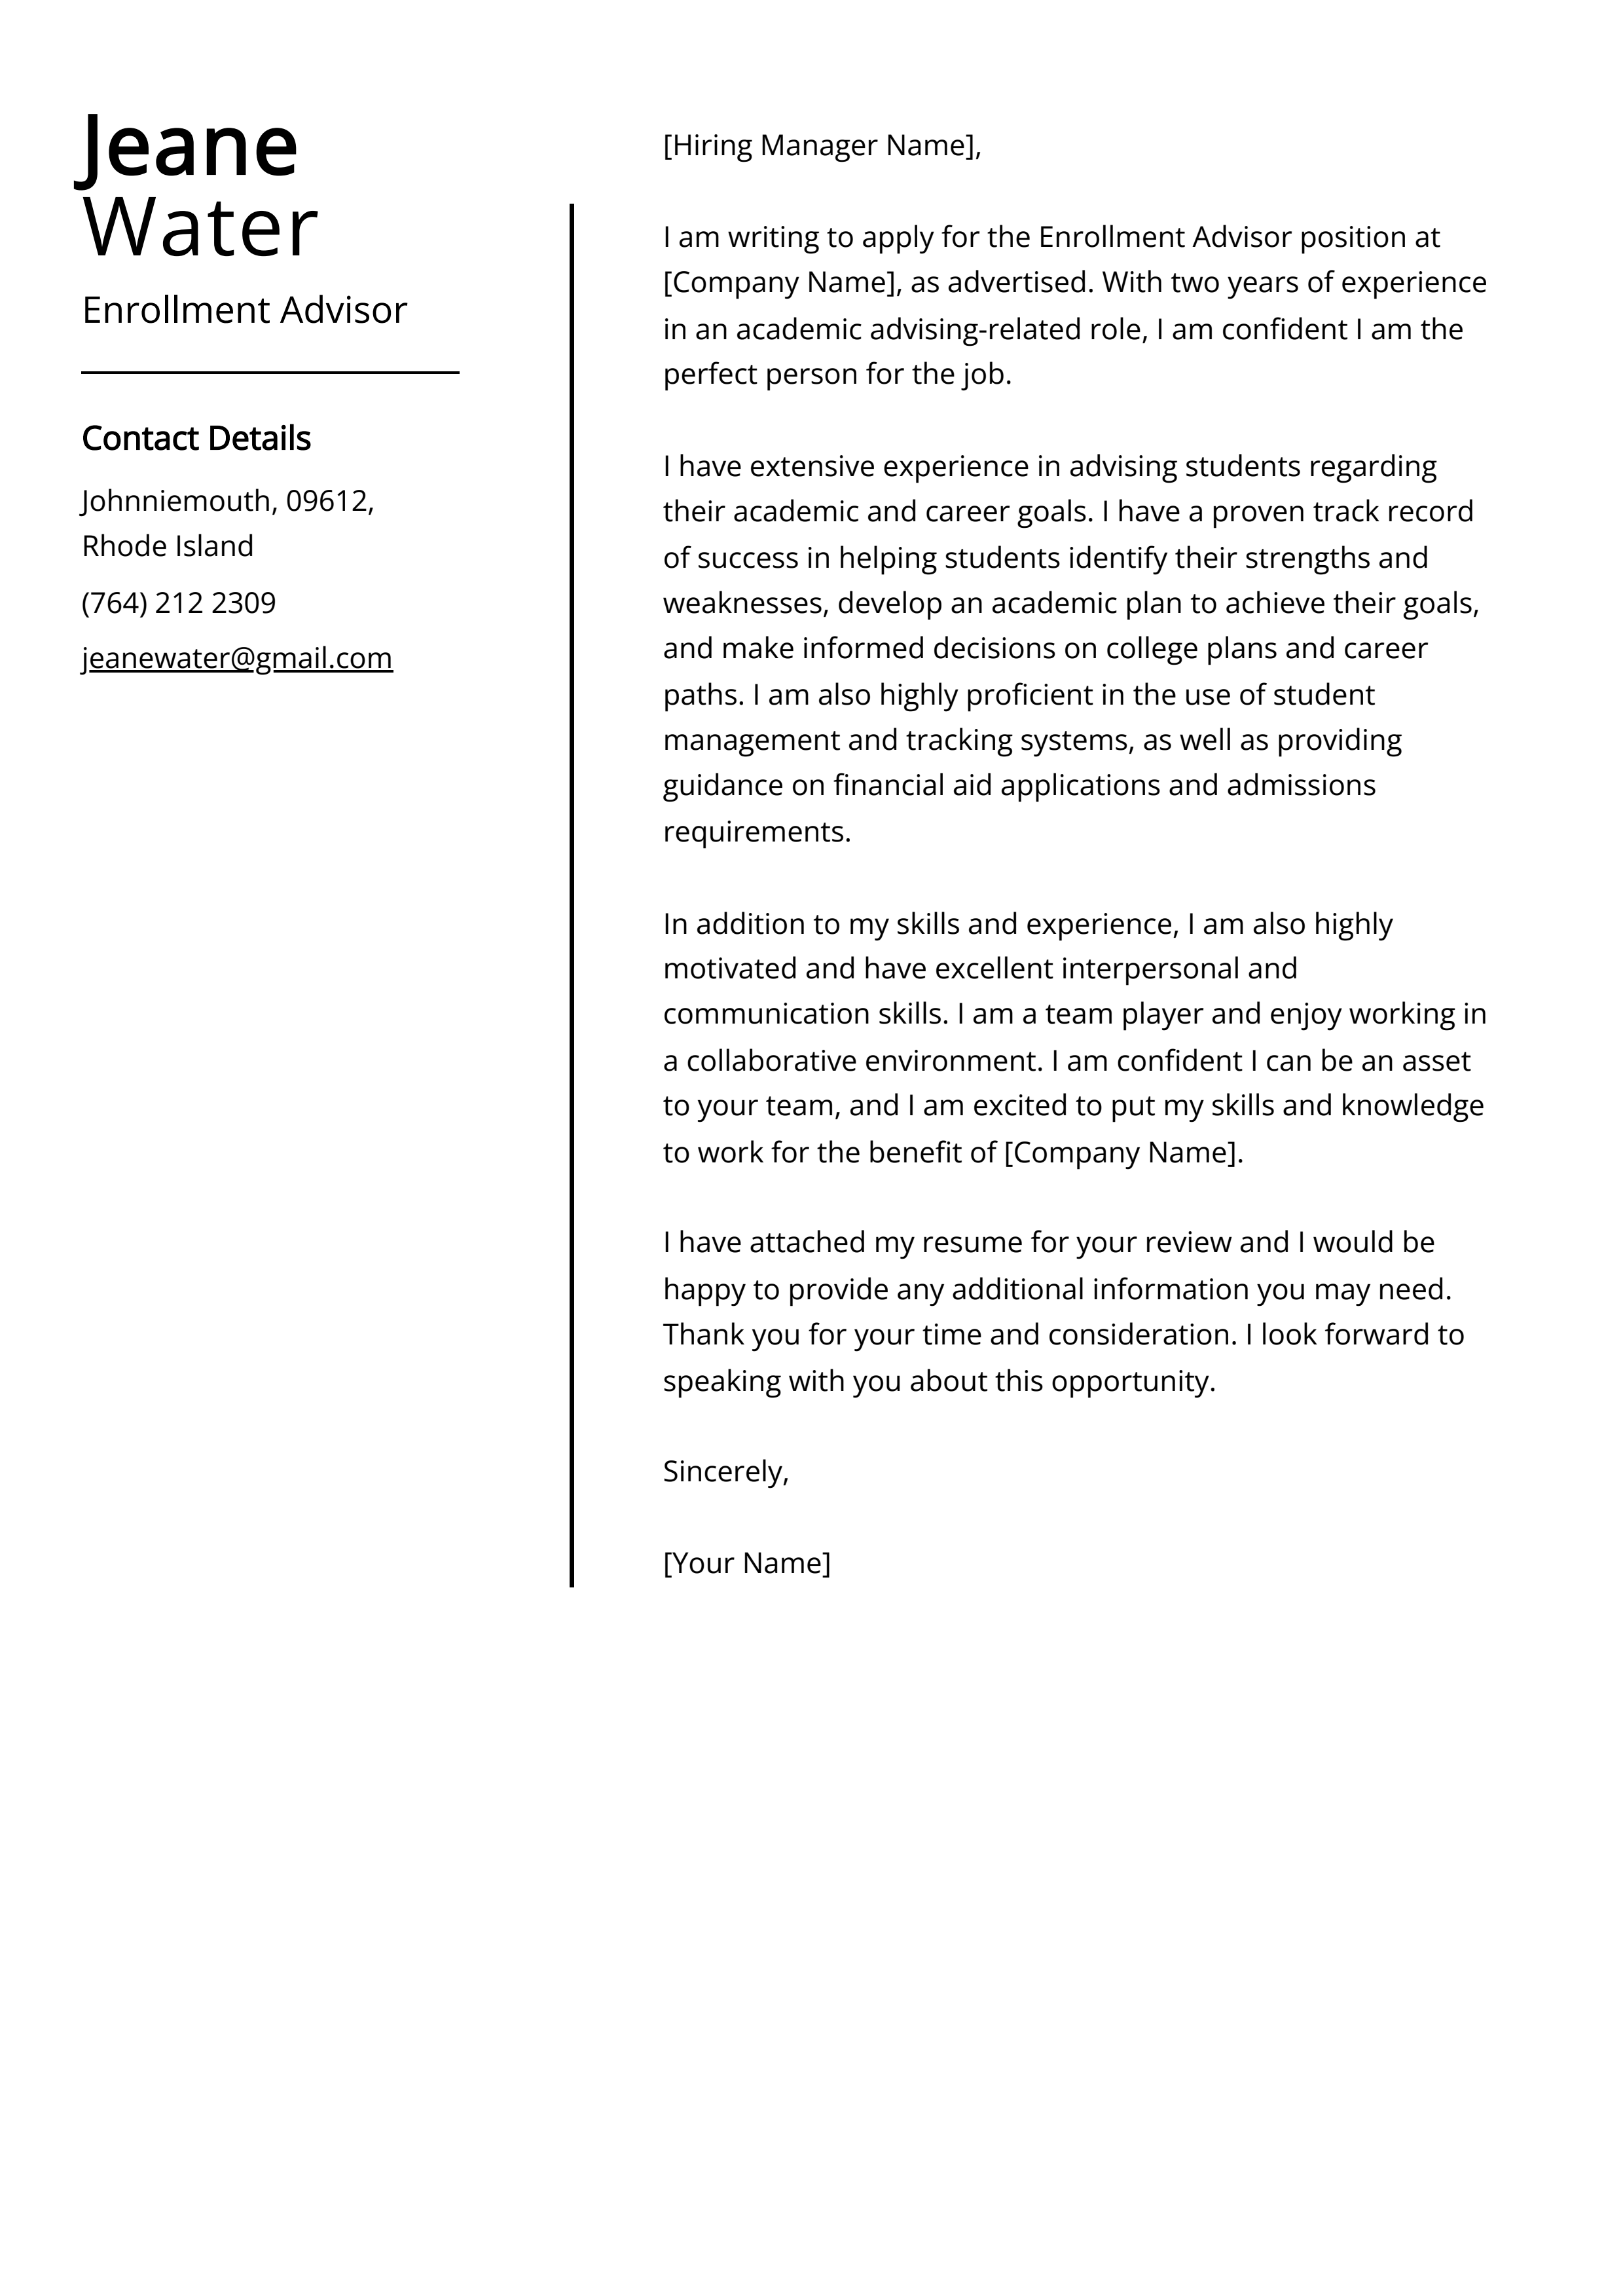 Enrollment Advisor Cover Letter Example